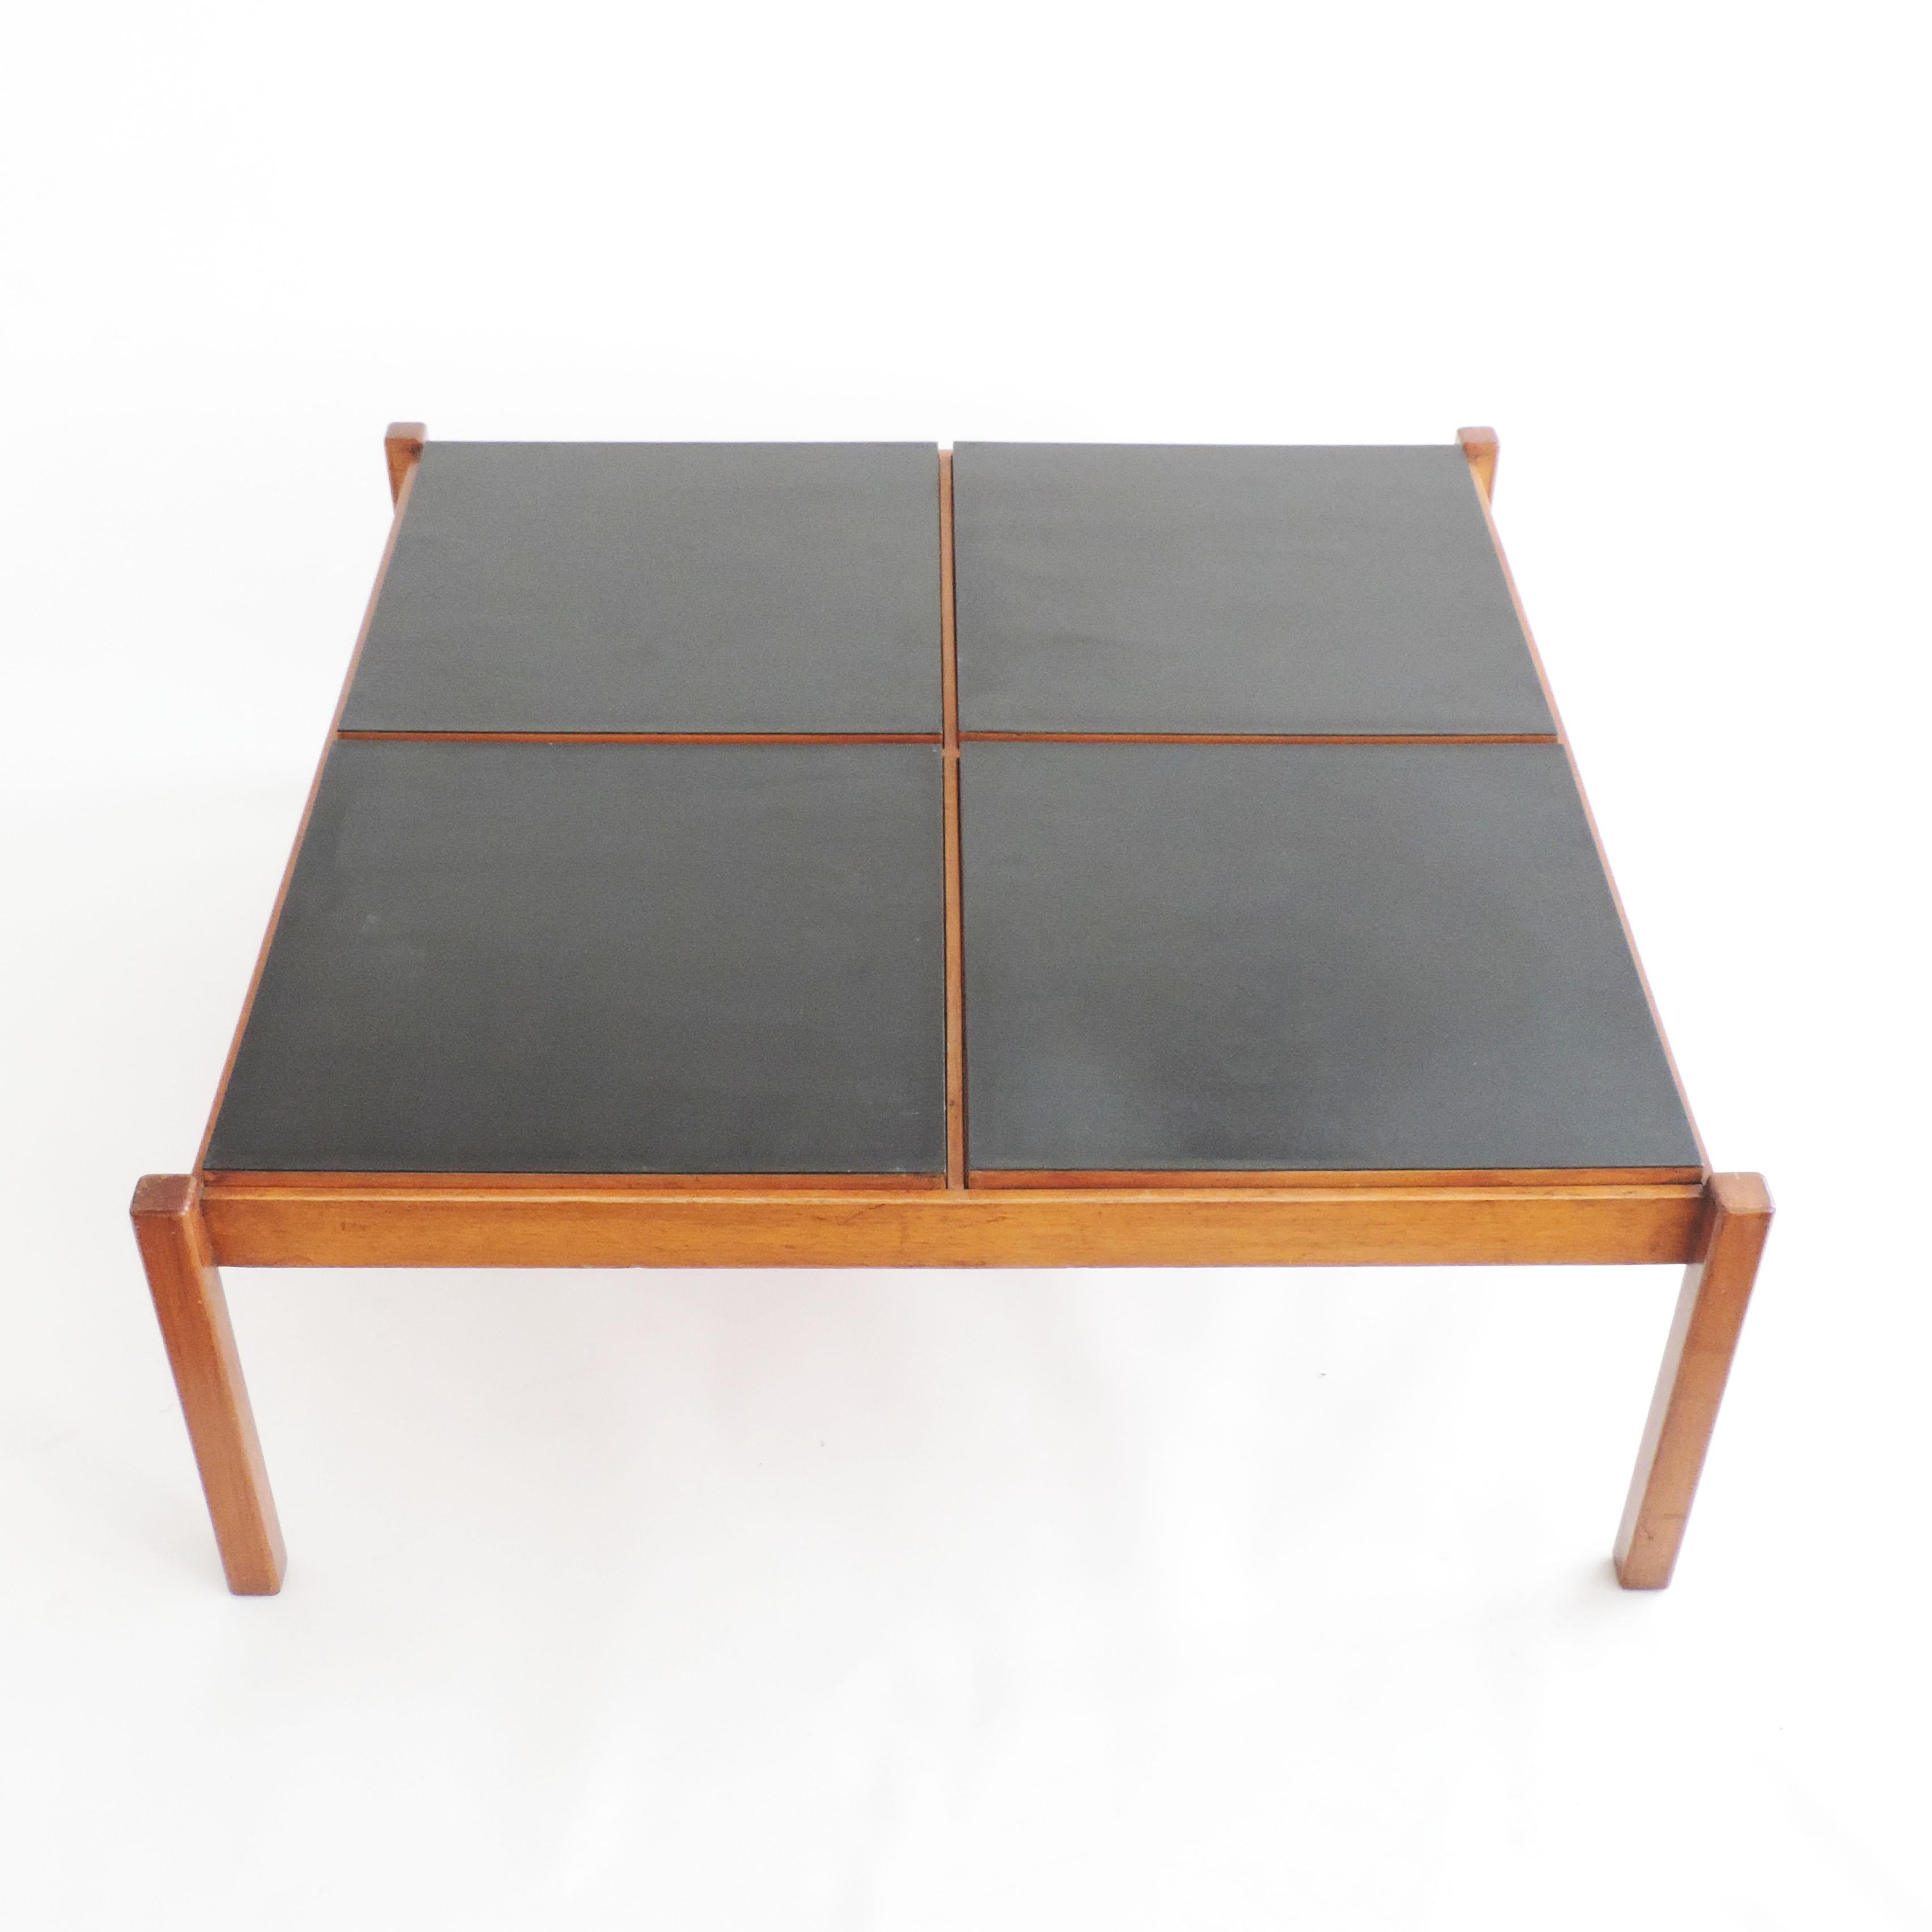 Rare variation de la table basse de l'architecte Gianfranco Frattini pour Cantieri Carugati, Italie, années 1950
Des carrés interchangeables en bois et en noir sont déplaçables à volonté pour créer différents effets.